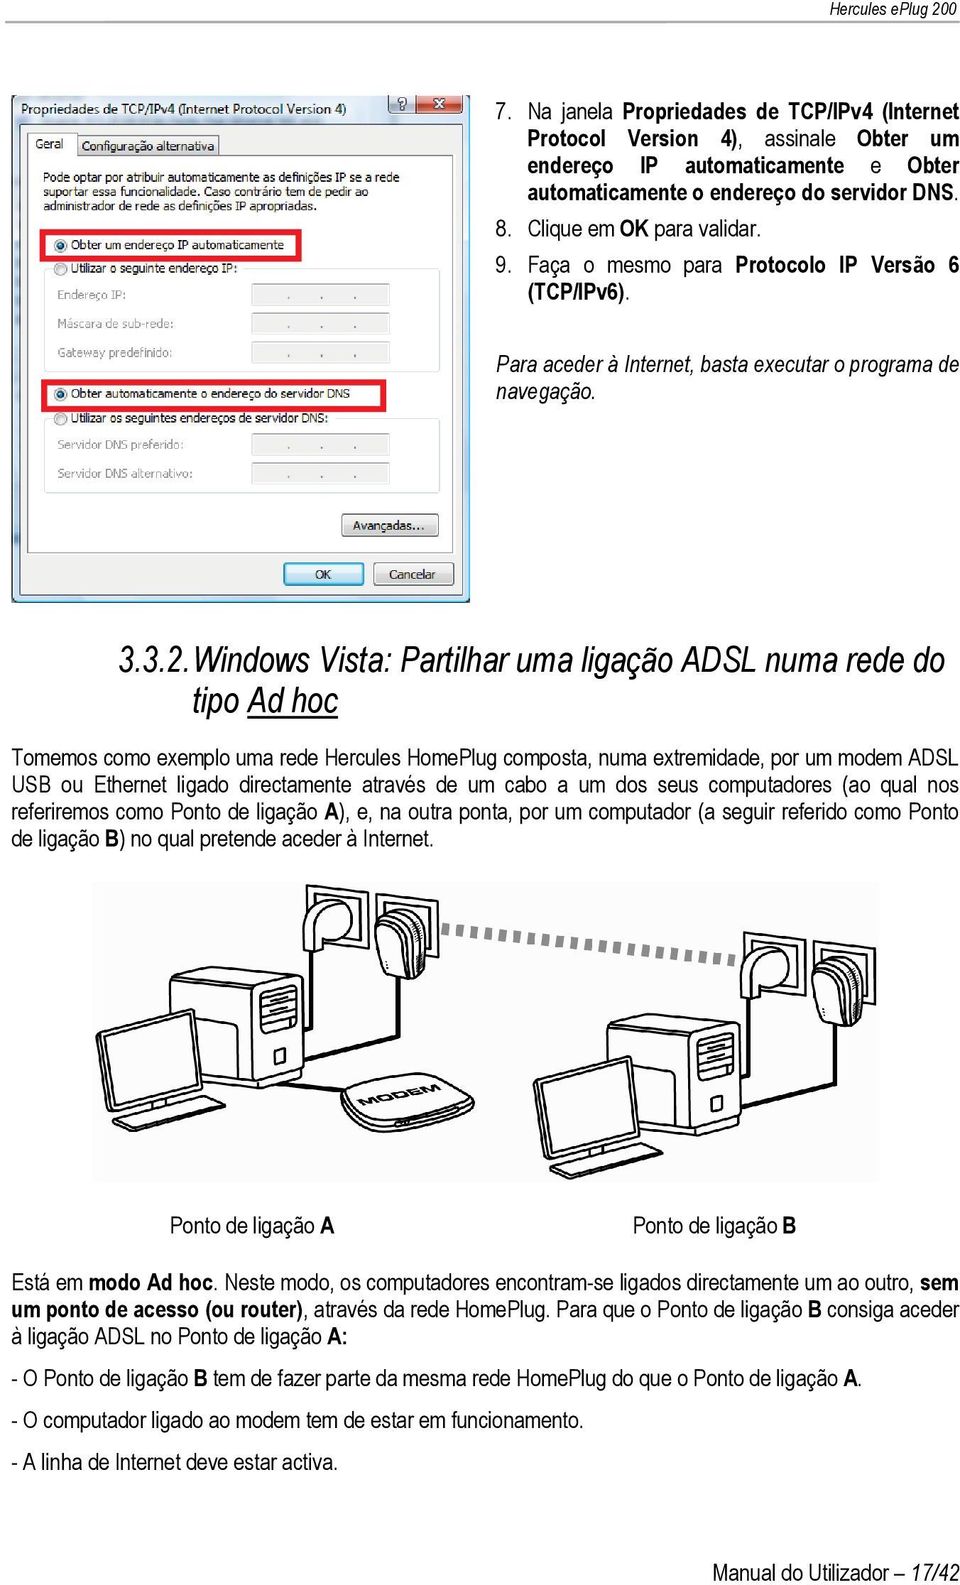 Windows Vista: Partilhar uma ligação ADSL numa rede do tipo Ad hoc Tomemos como exemplo uma rede Hercules HomePlug composta, numa extremidade, por um modem ADSL USB ou Ethernet ligado directamente